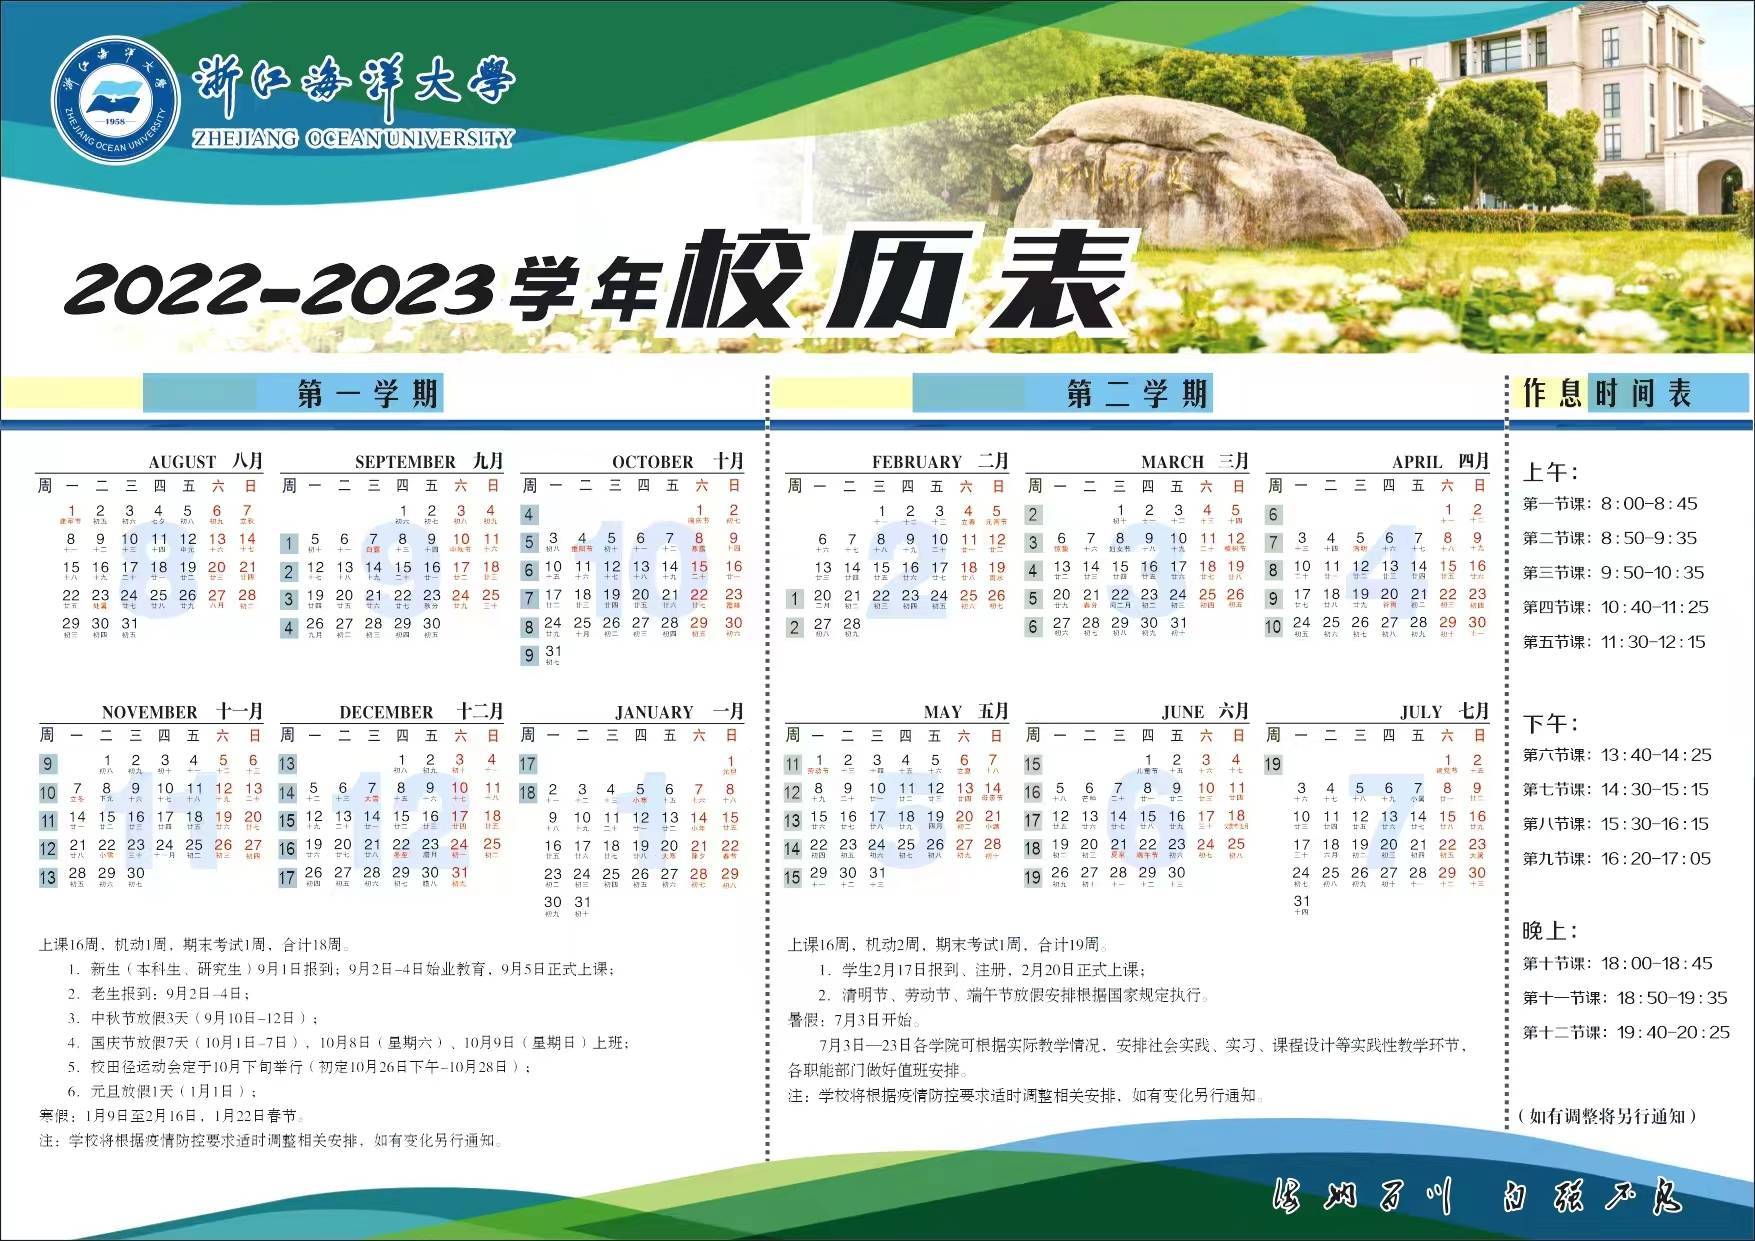 2023浙江海洋大学寒假开始和结束时间 什么时候放寒假